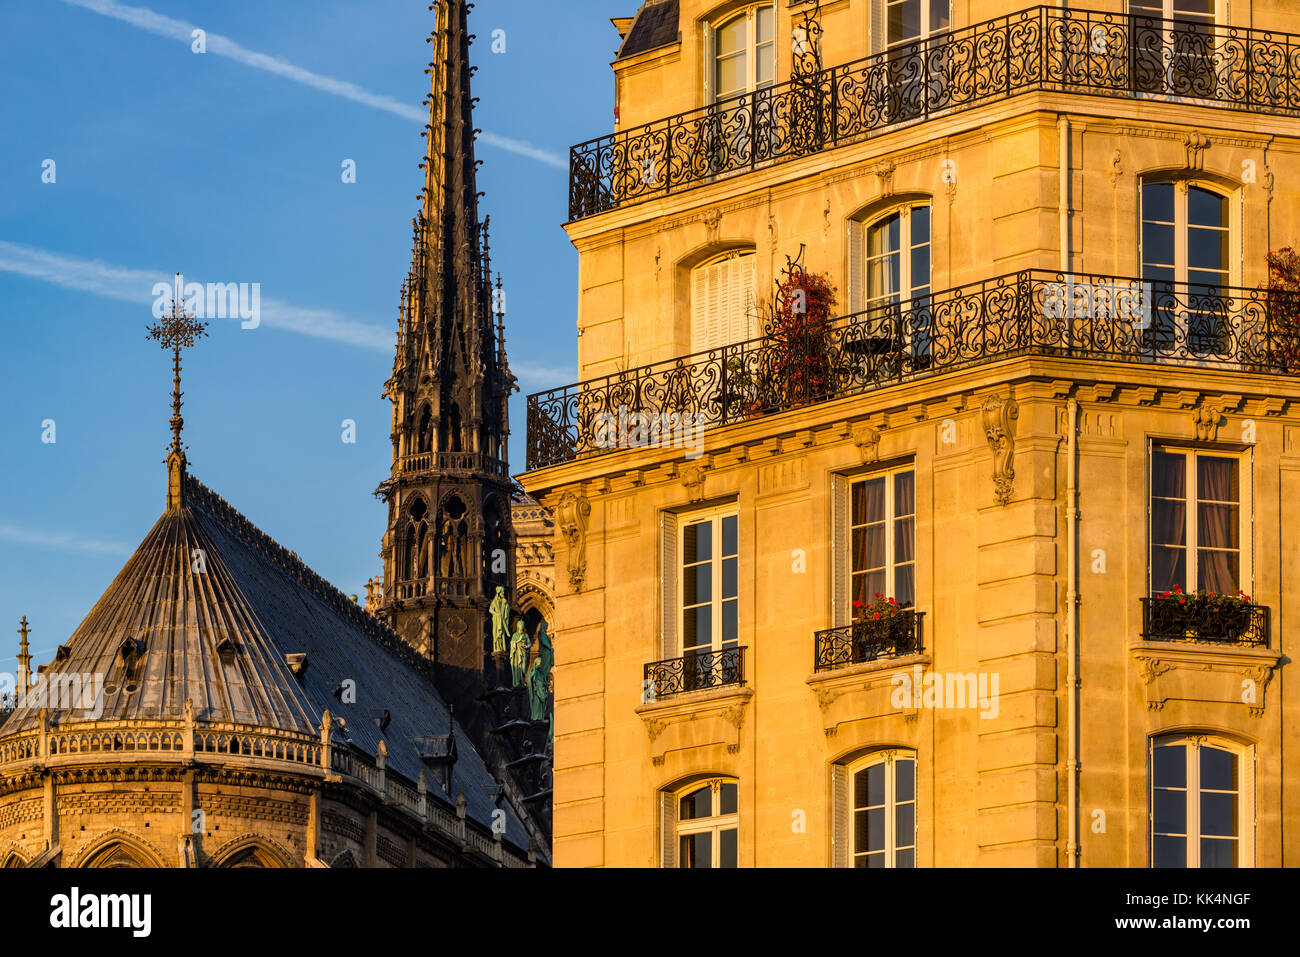 La façade de l'immeuble haussmannien au coucher du soleil et la flèche de Notre Dame de Paris. L'Ile de la Cité, 4e arrondissement, Paris, France Banque D'Images